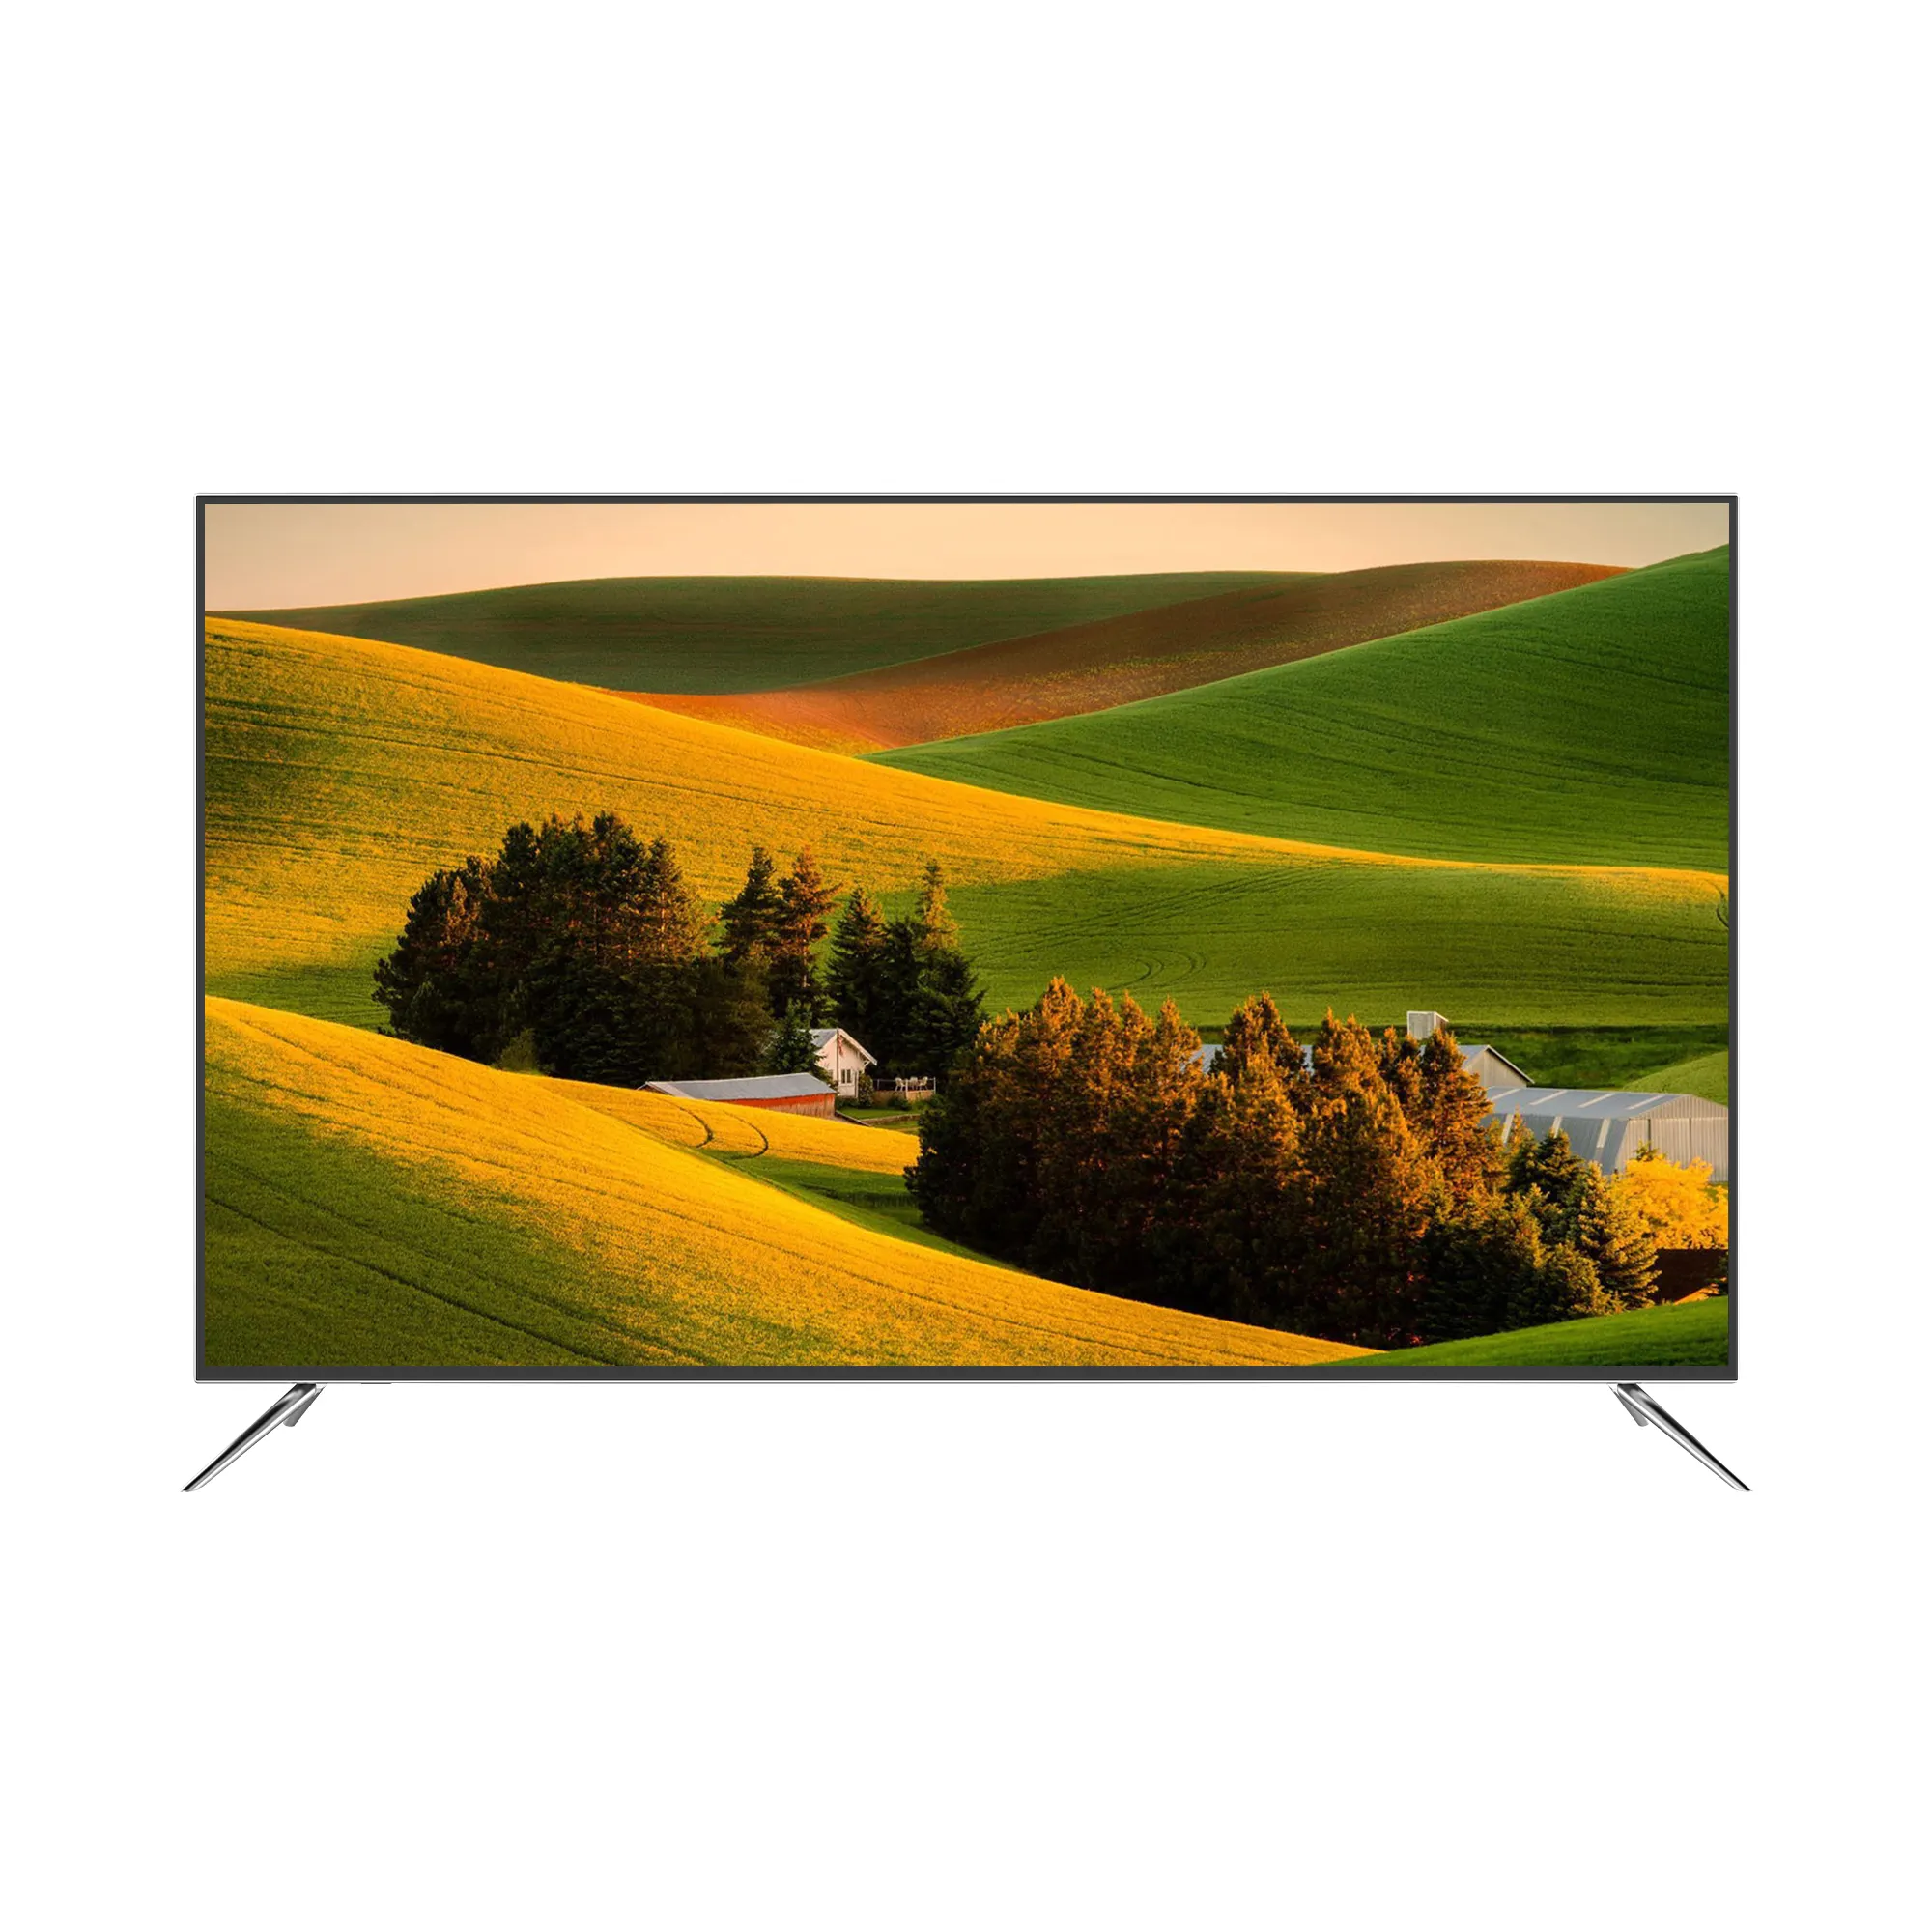 בית טלוויזיות נמכרים במחירי המפעל 55 אינץ חכם הטלוויזיה 4k u ltra hd led טלוויזיה 55 סנטימטרים חכם בשימוש של בית טלוויזיה